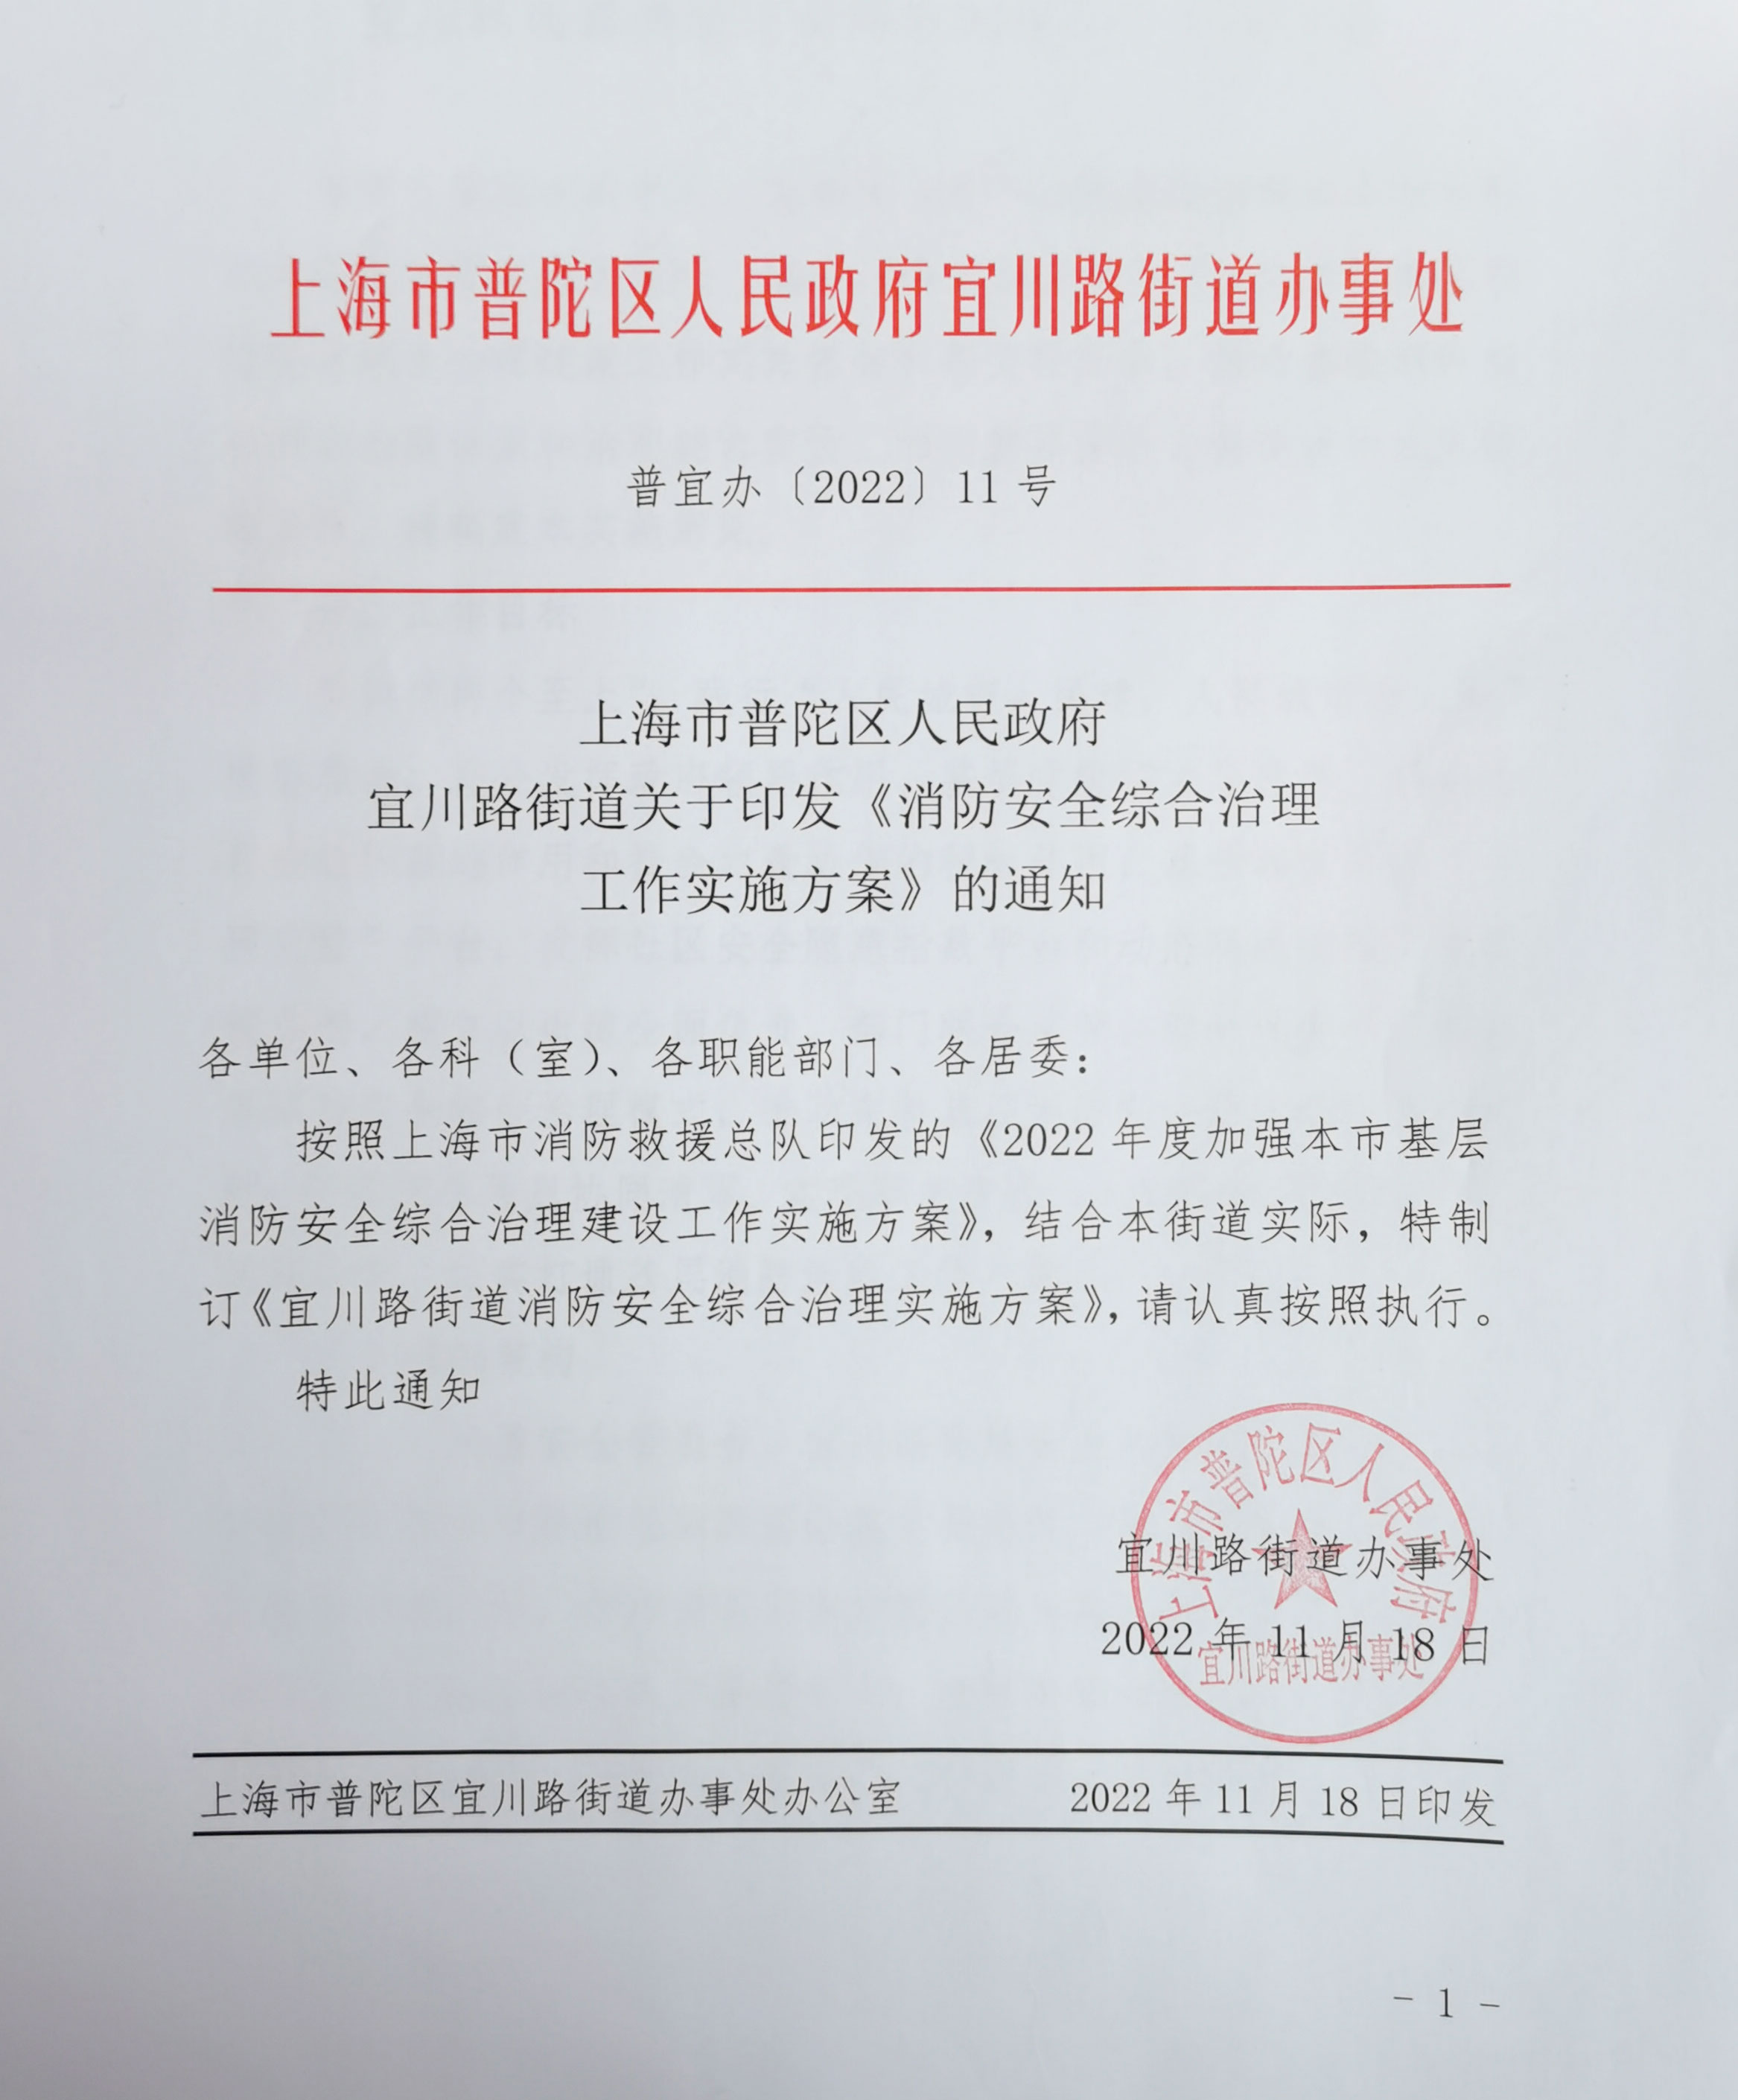 上海市普陀区人民政府宜川路街道关于印发《消防安全综合治理工作实施方案》的通知